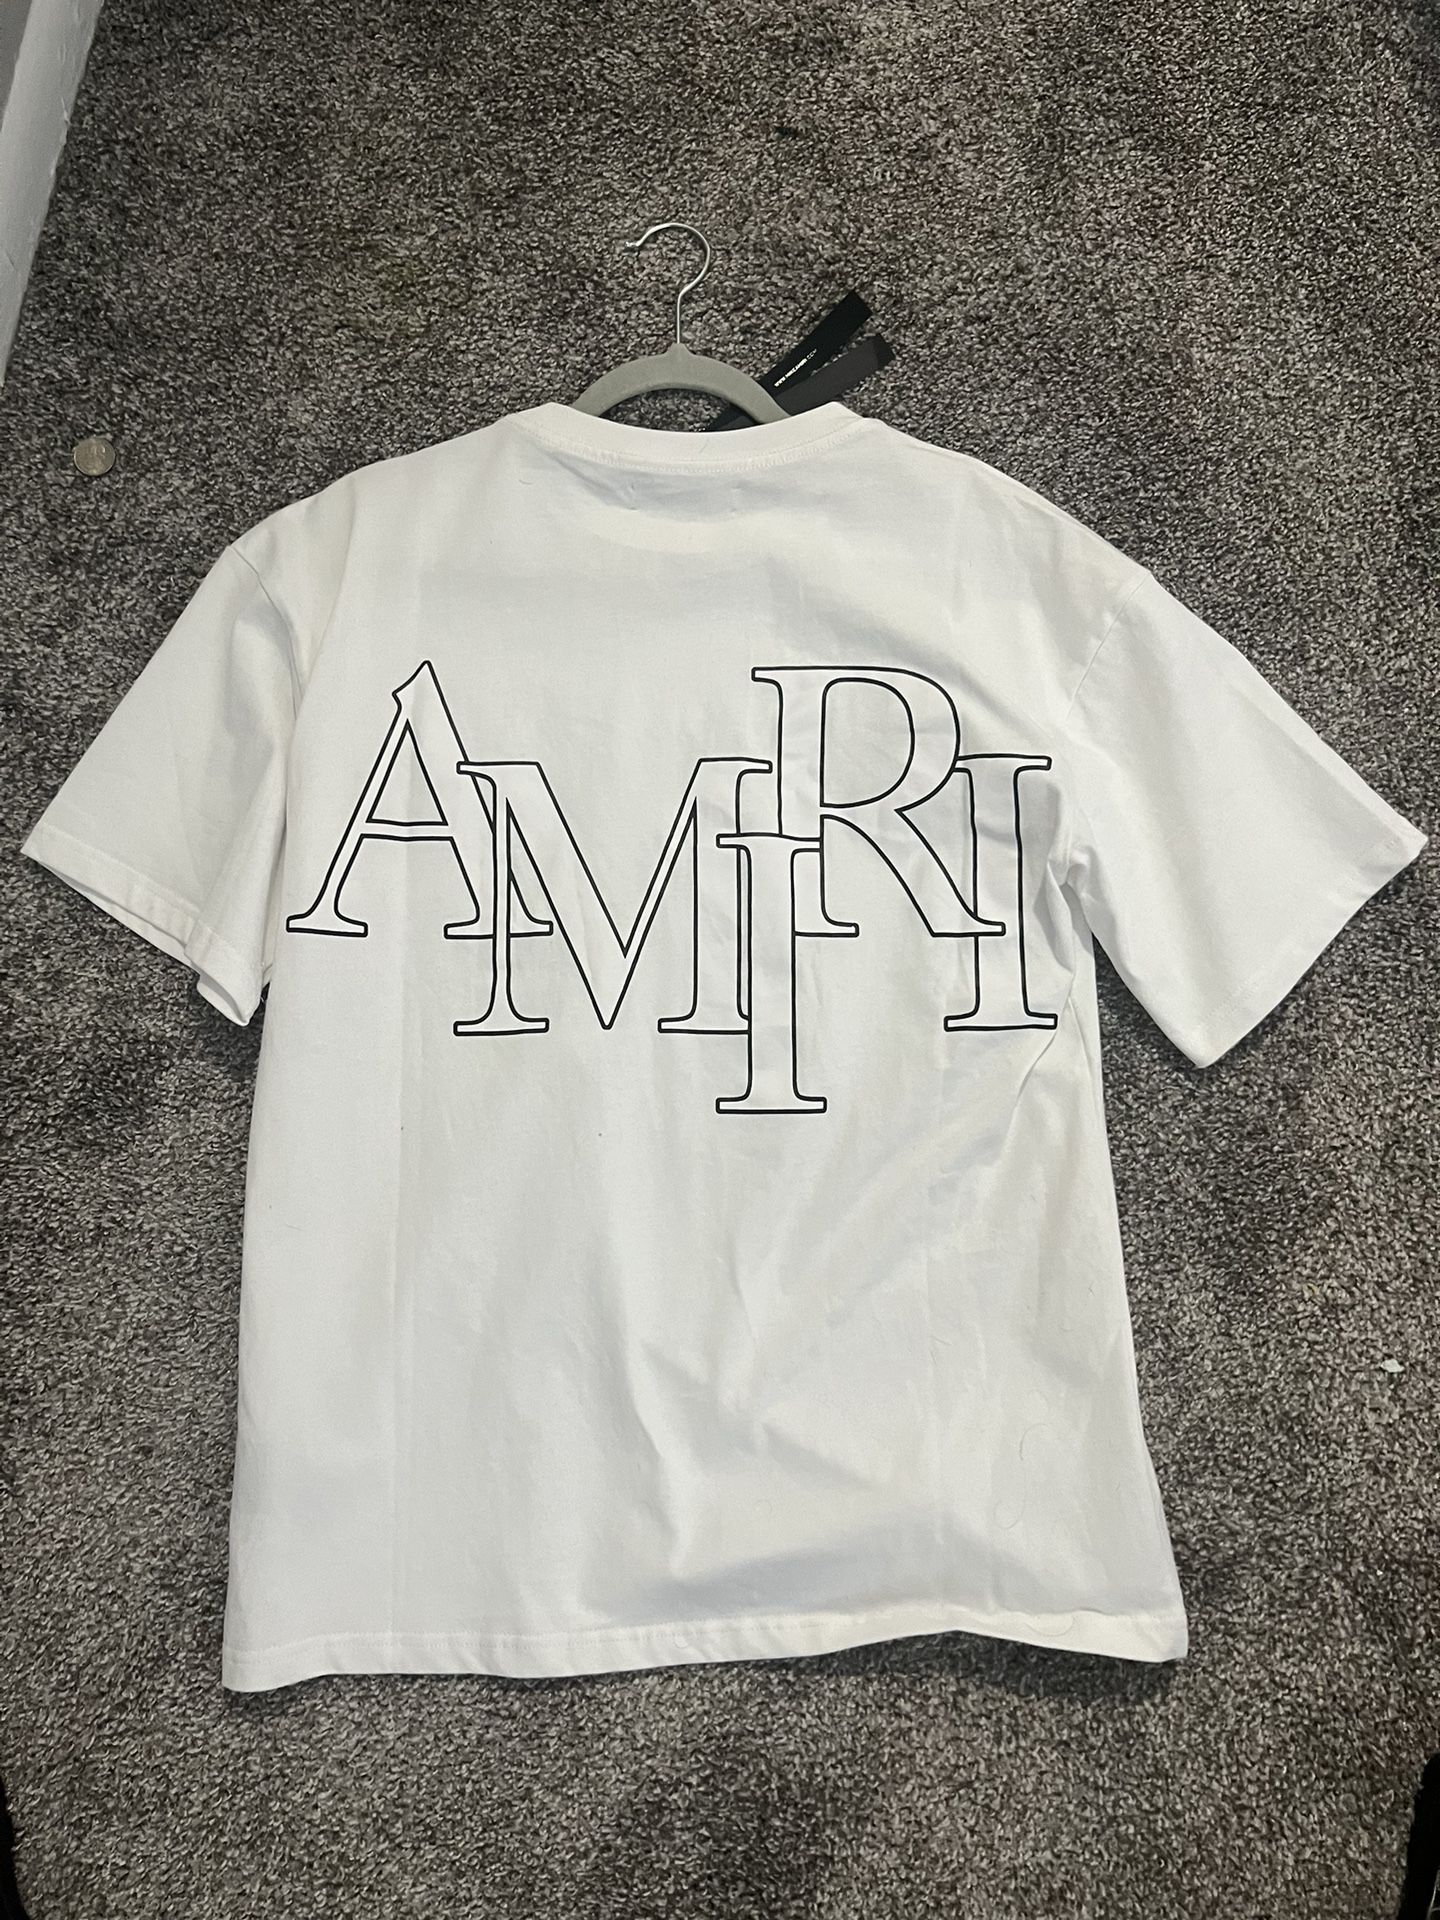 Amari Shirt